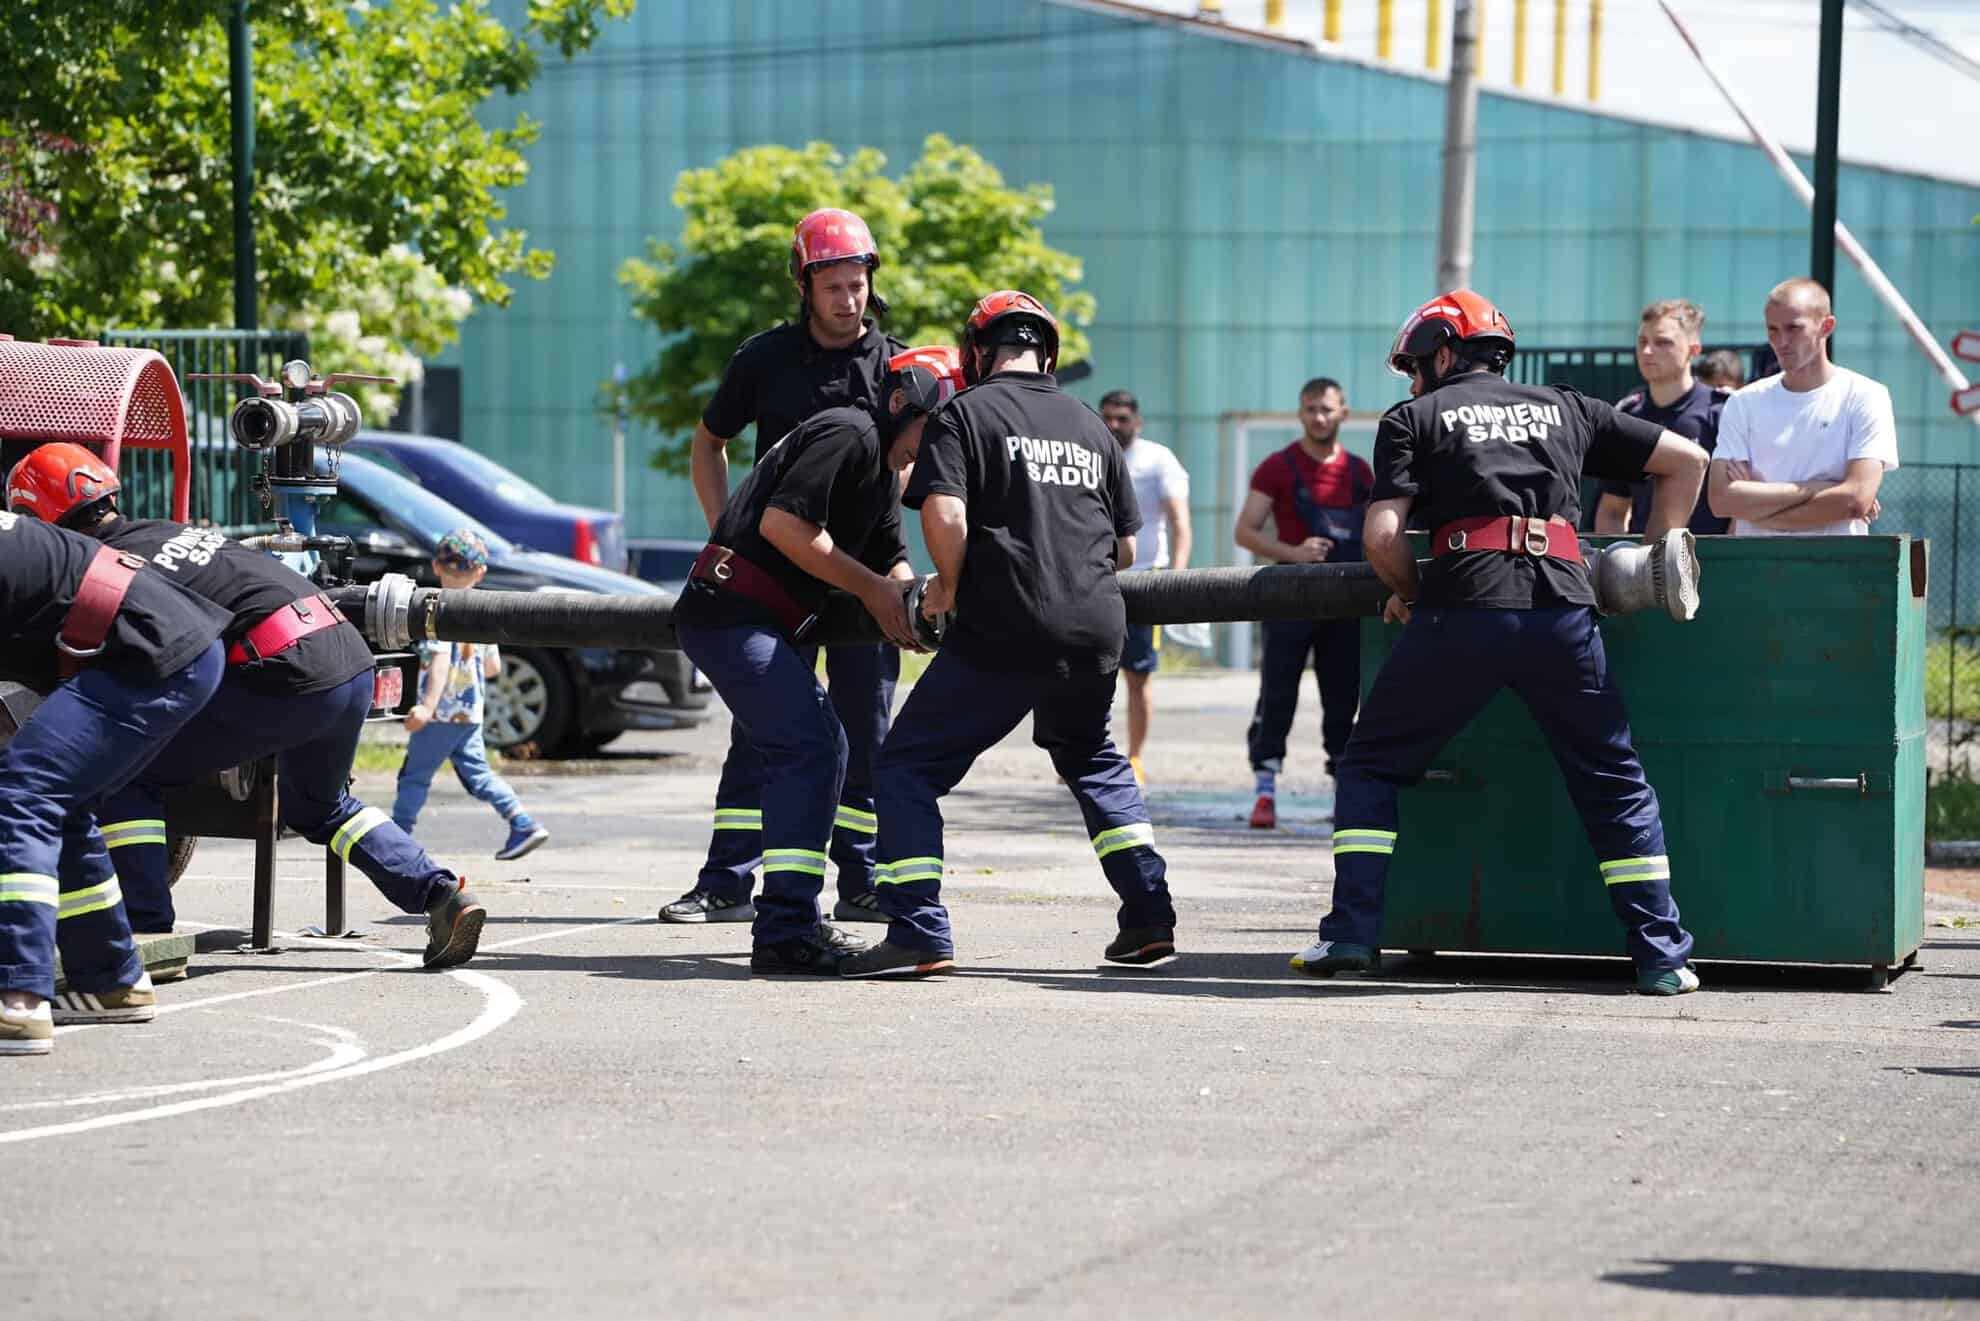 svsu sasu câștigător al competiției pompierilor din județul sibiu (foto)